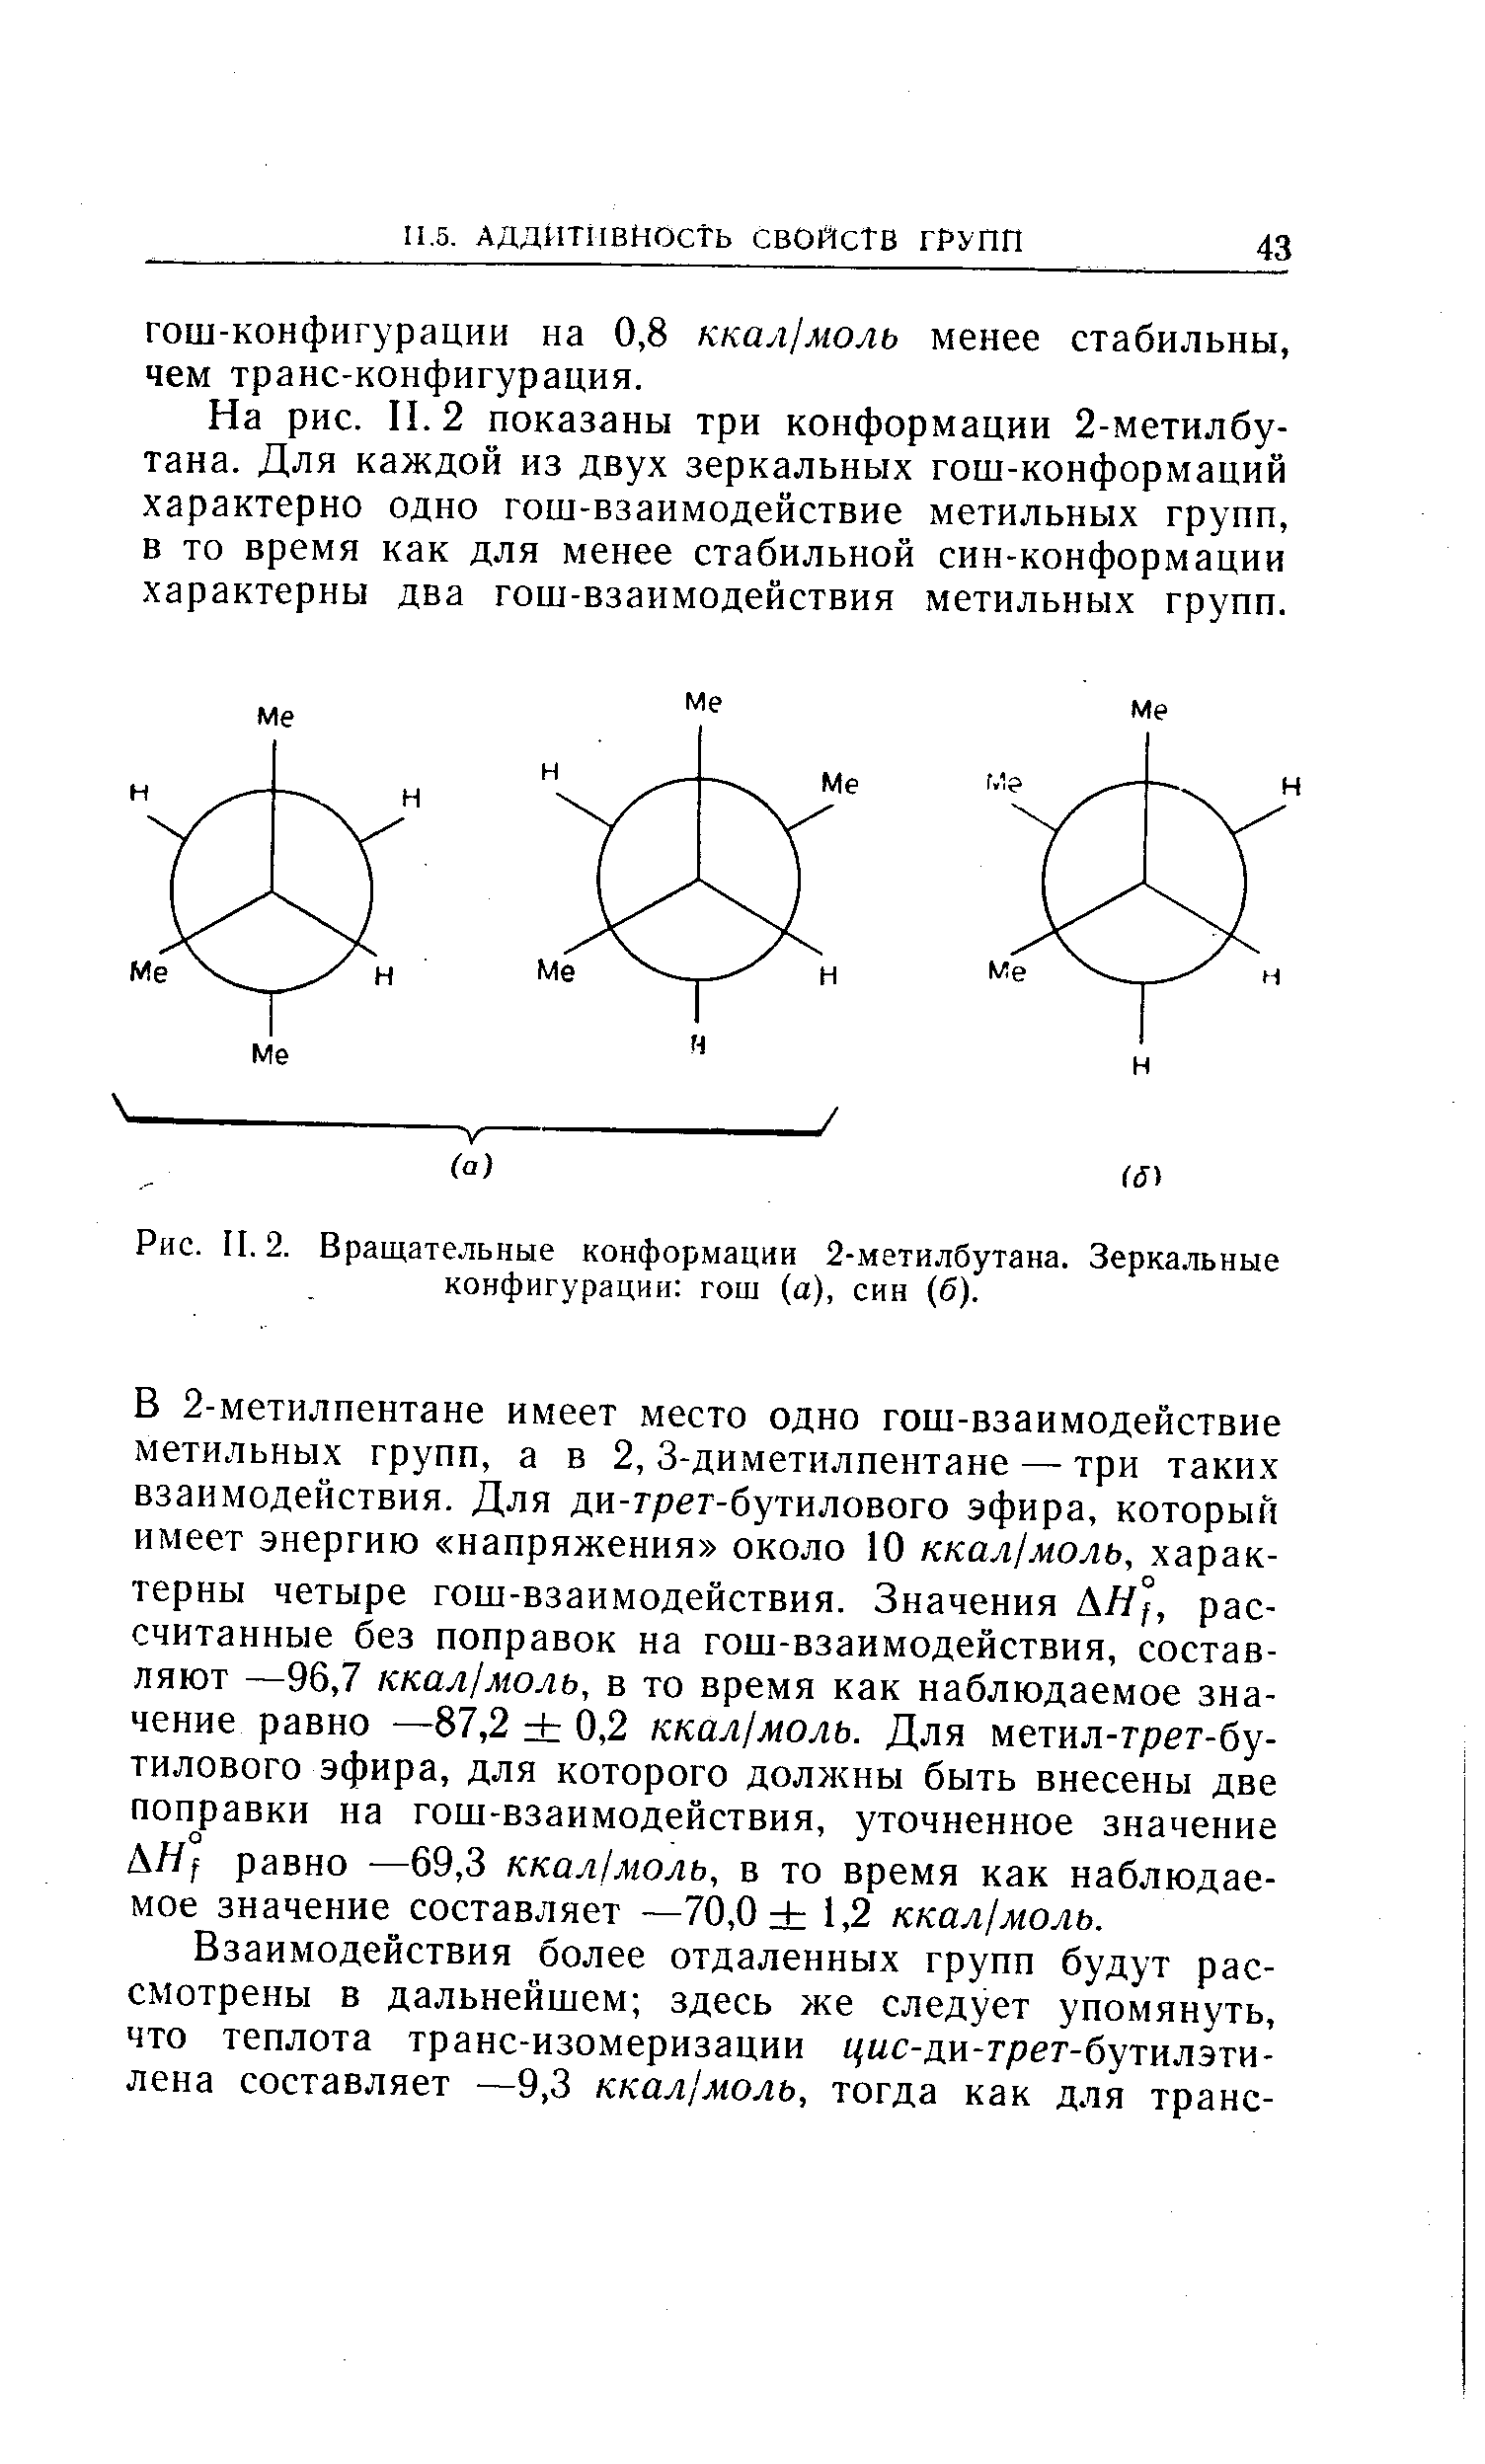 На рис. II. 2 показаны три конформации 2-метилбу-тана. Для каждой из двух зеркальных гош-конформаций характерно одно гош-взаимодействие метильных групп, в то время как для менее стабильной син-конформации характерны два гош-взаимодействия метильных групп.